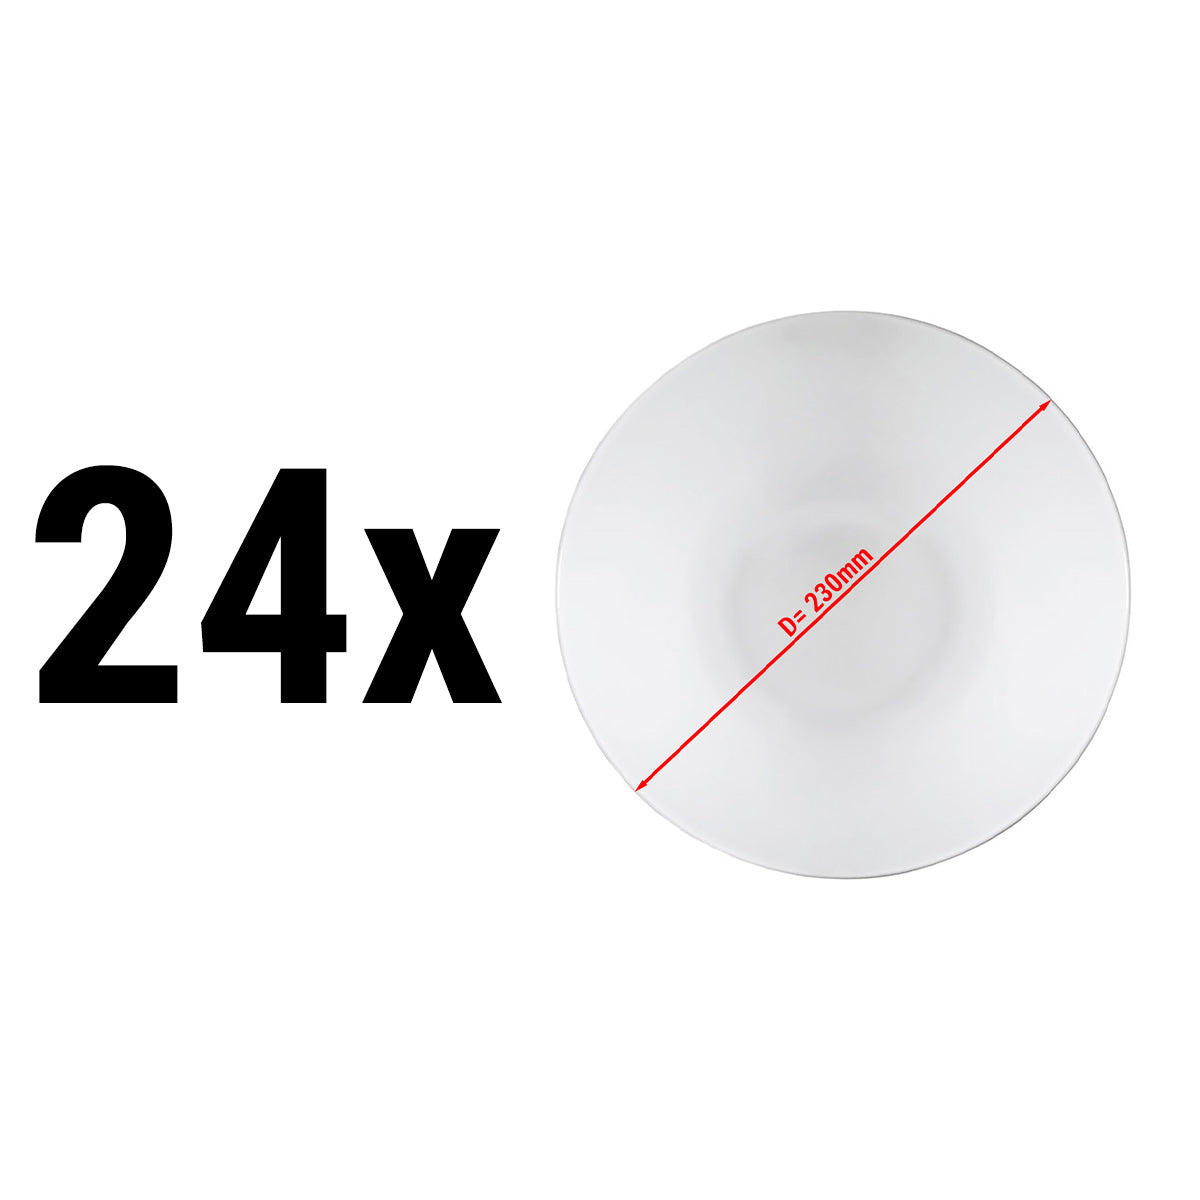 (24 stk) PERA Hvit - middag / salatskål - Ø 23 cm